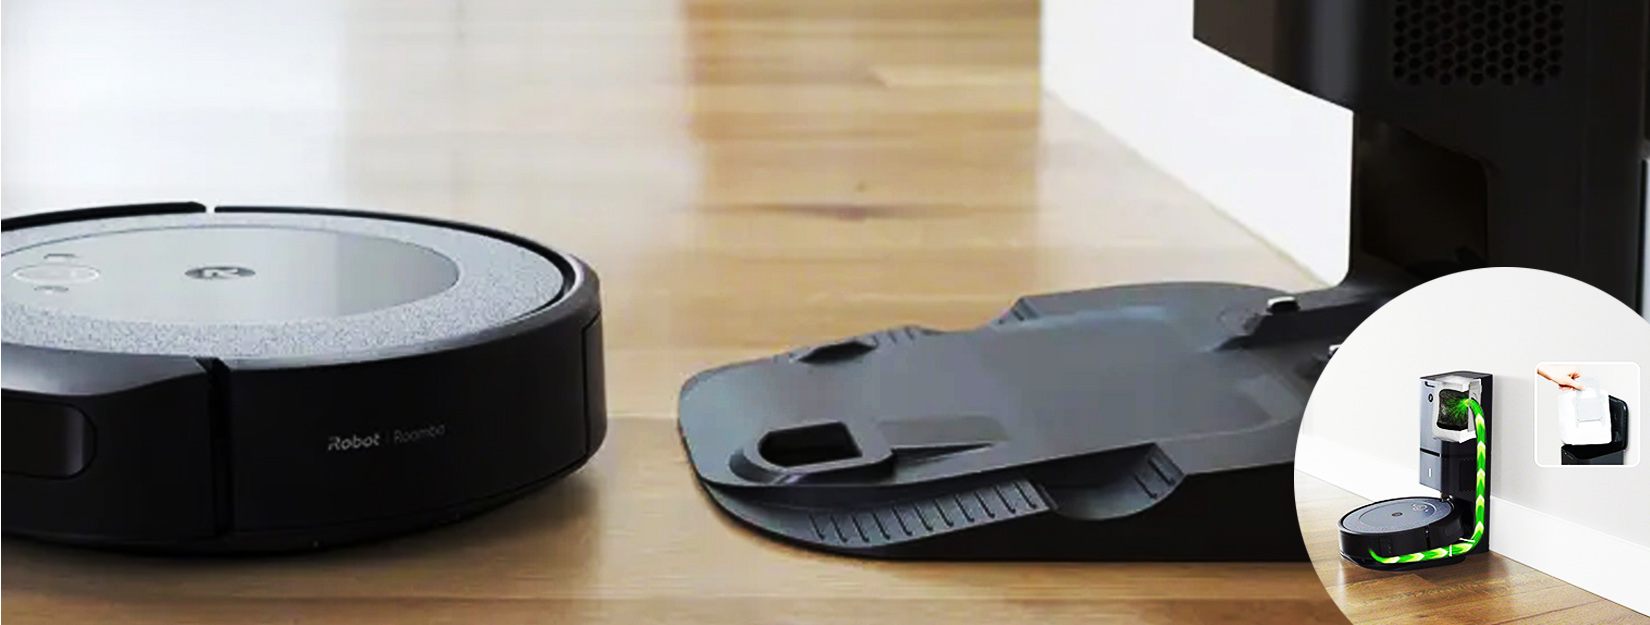 Робот пылесос iRobot Roomba i3 может работать с использованием базы самоочистки